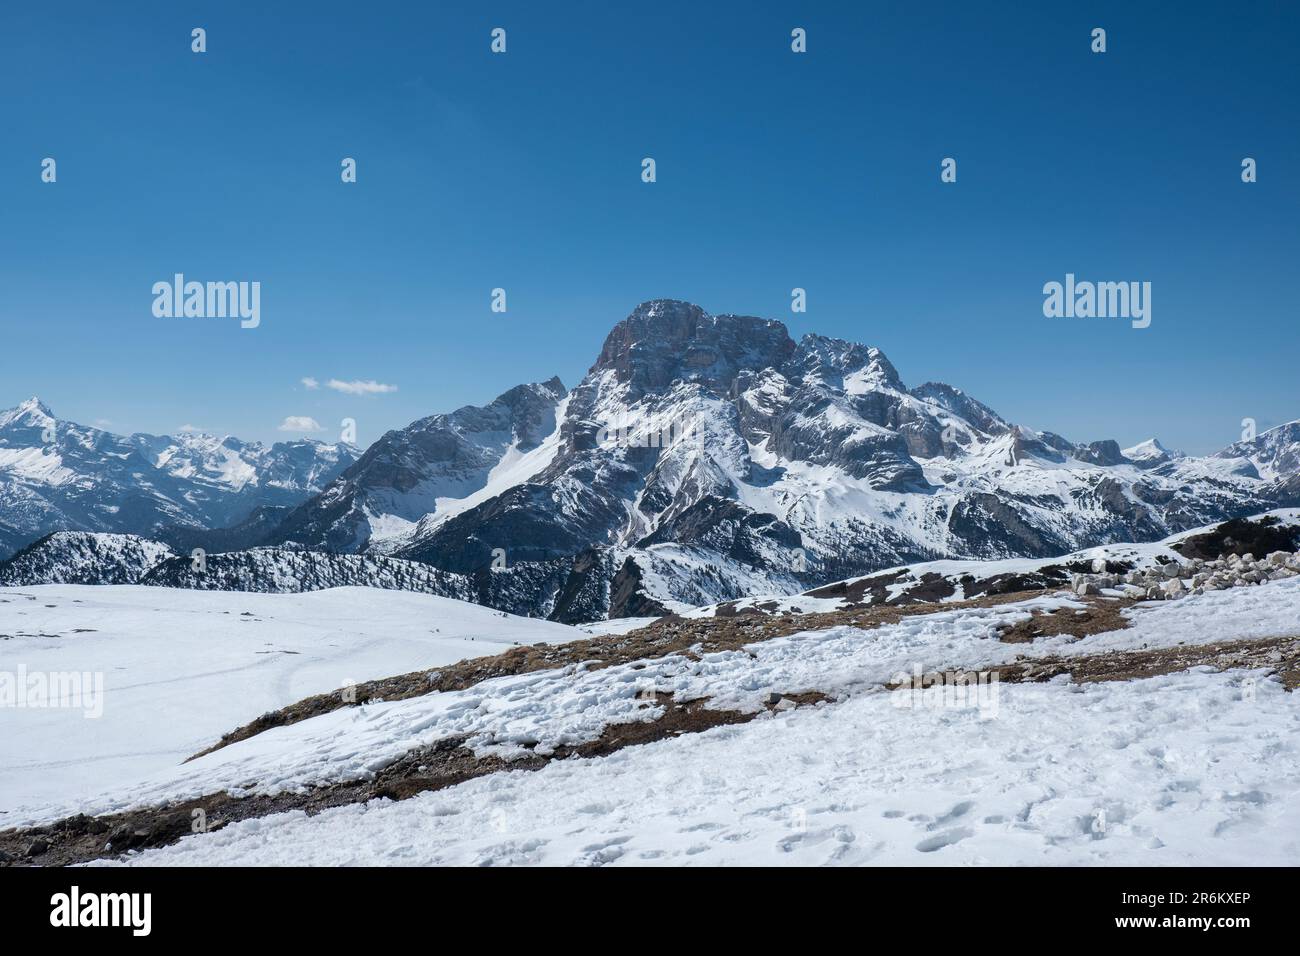 Croda Rossa d'Ampezzo montagne couverte de neige immaculée, Dolomites, Italie, Europe Banque D'Images